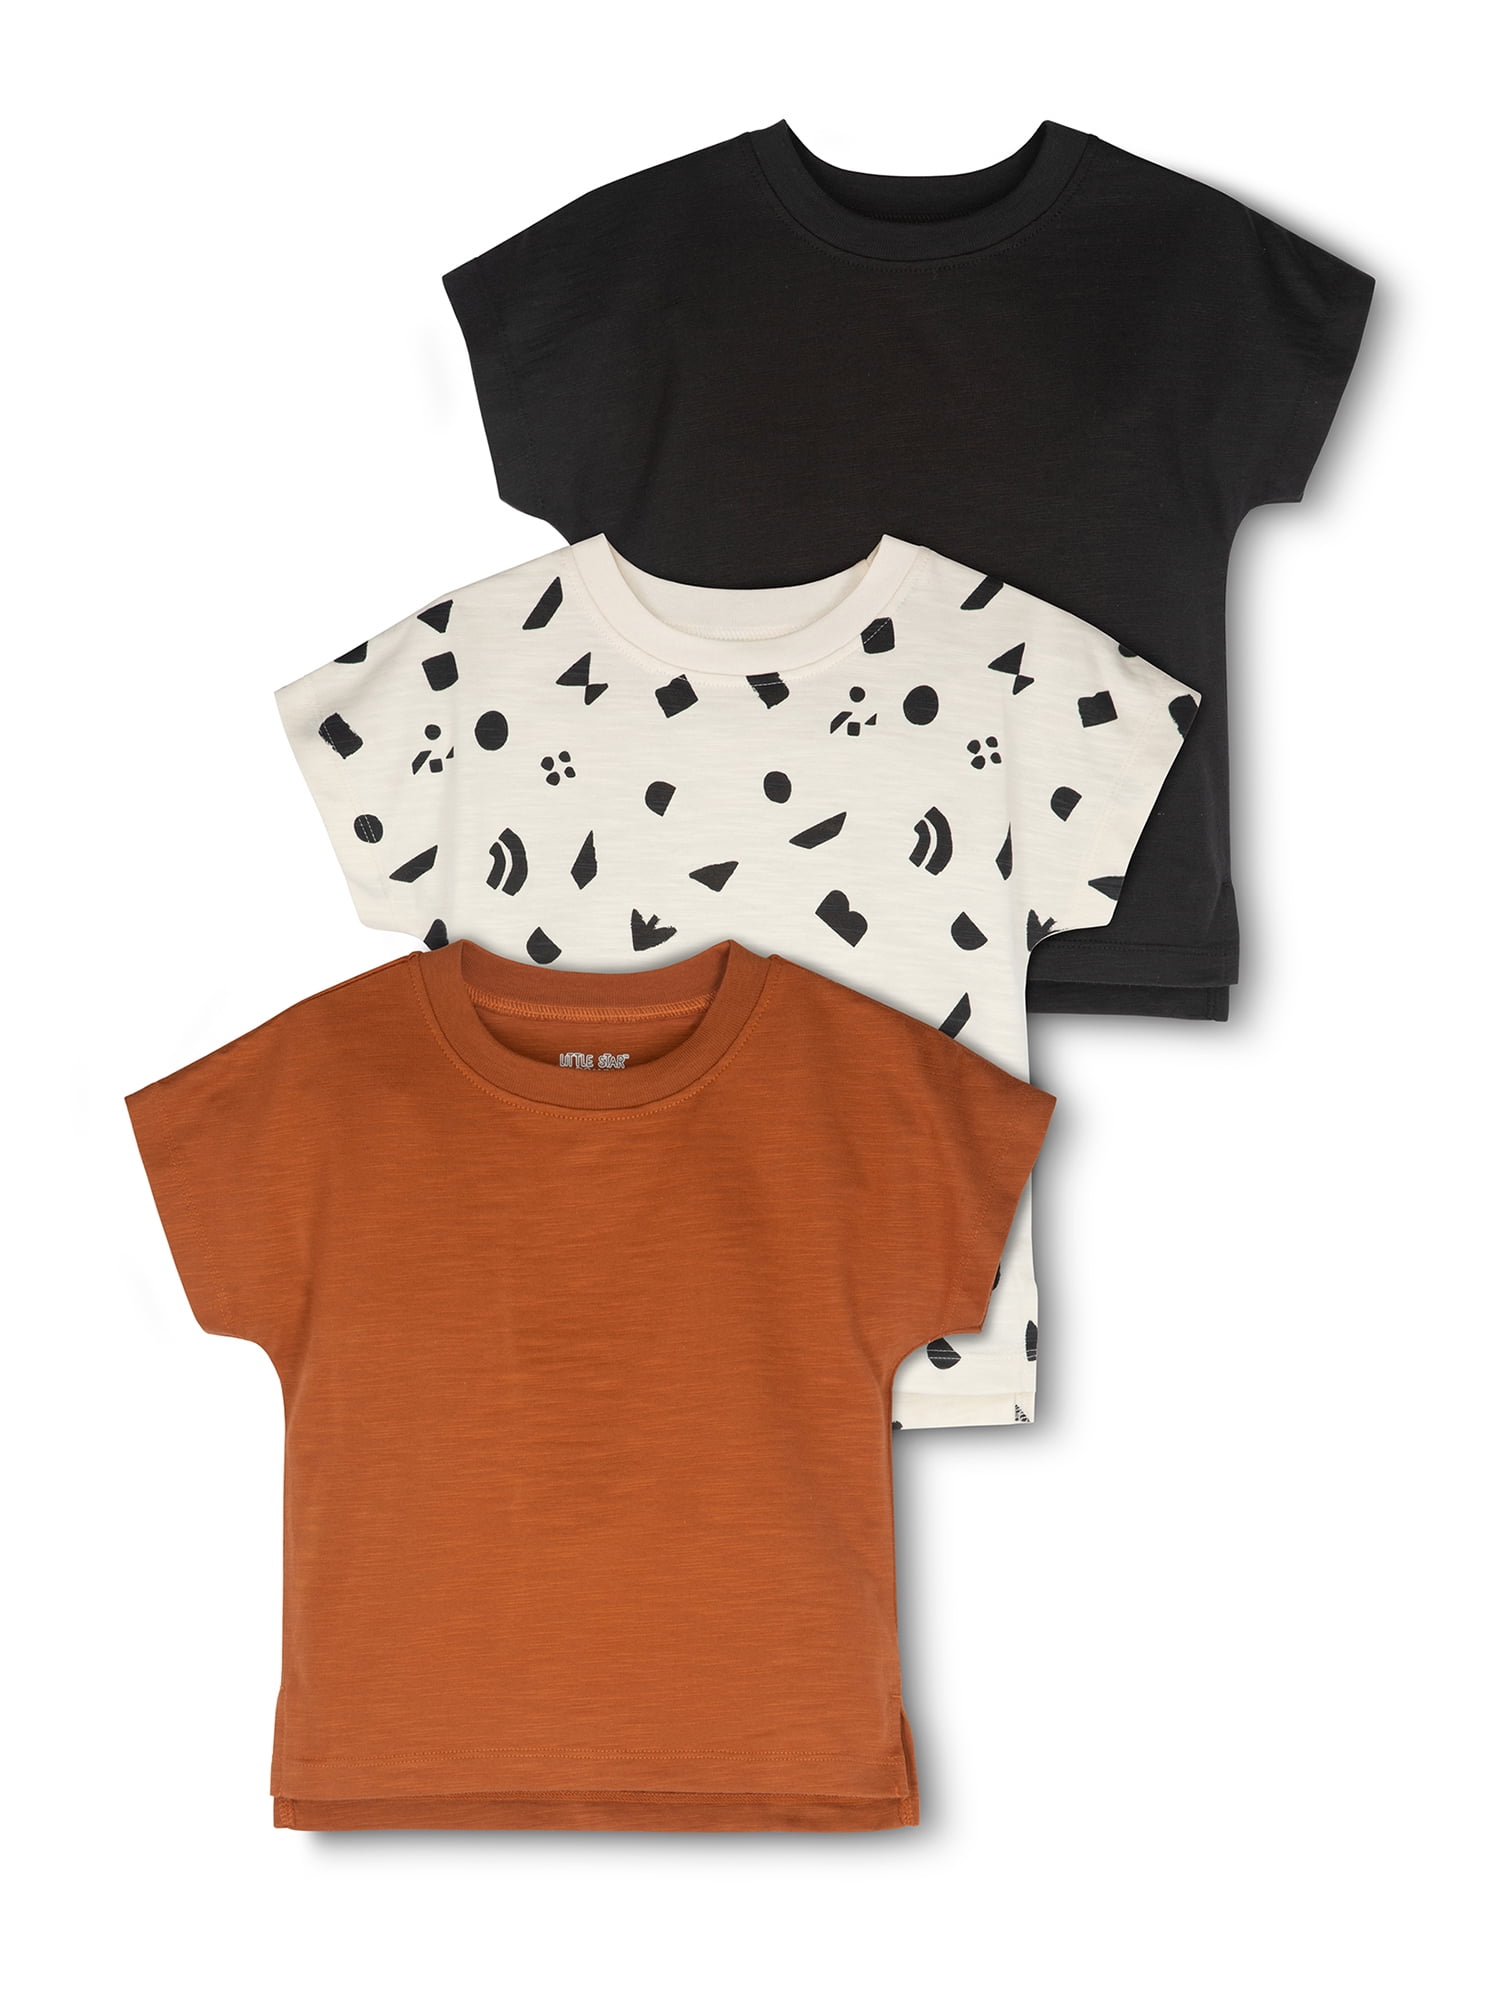 Kleding Meisjeskleding Tops & T-shirts Blouses 3t healthtex shirt 